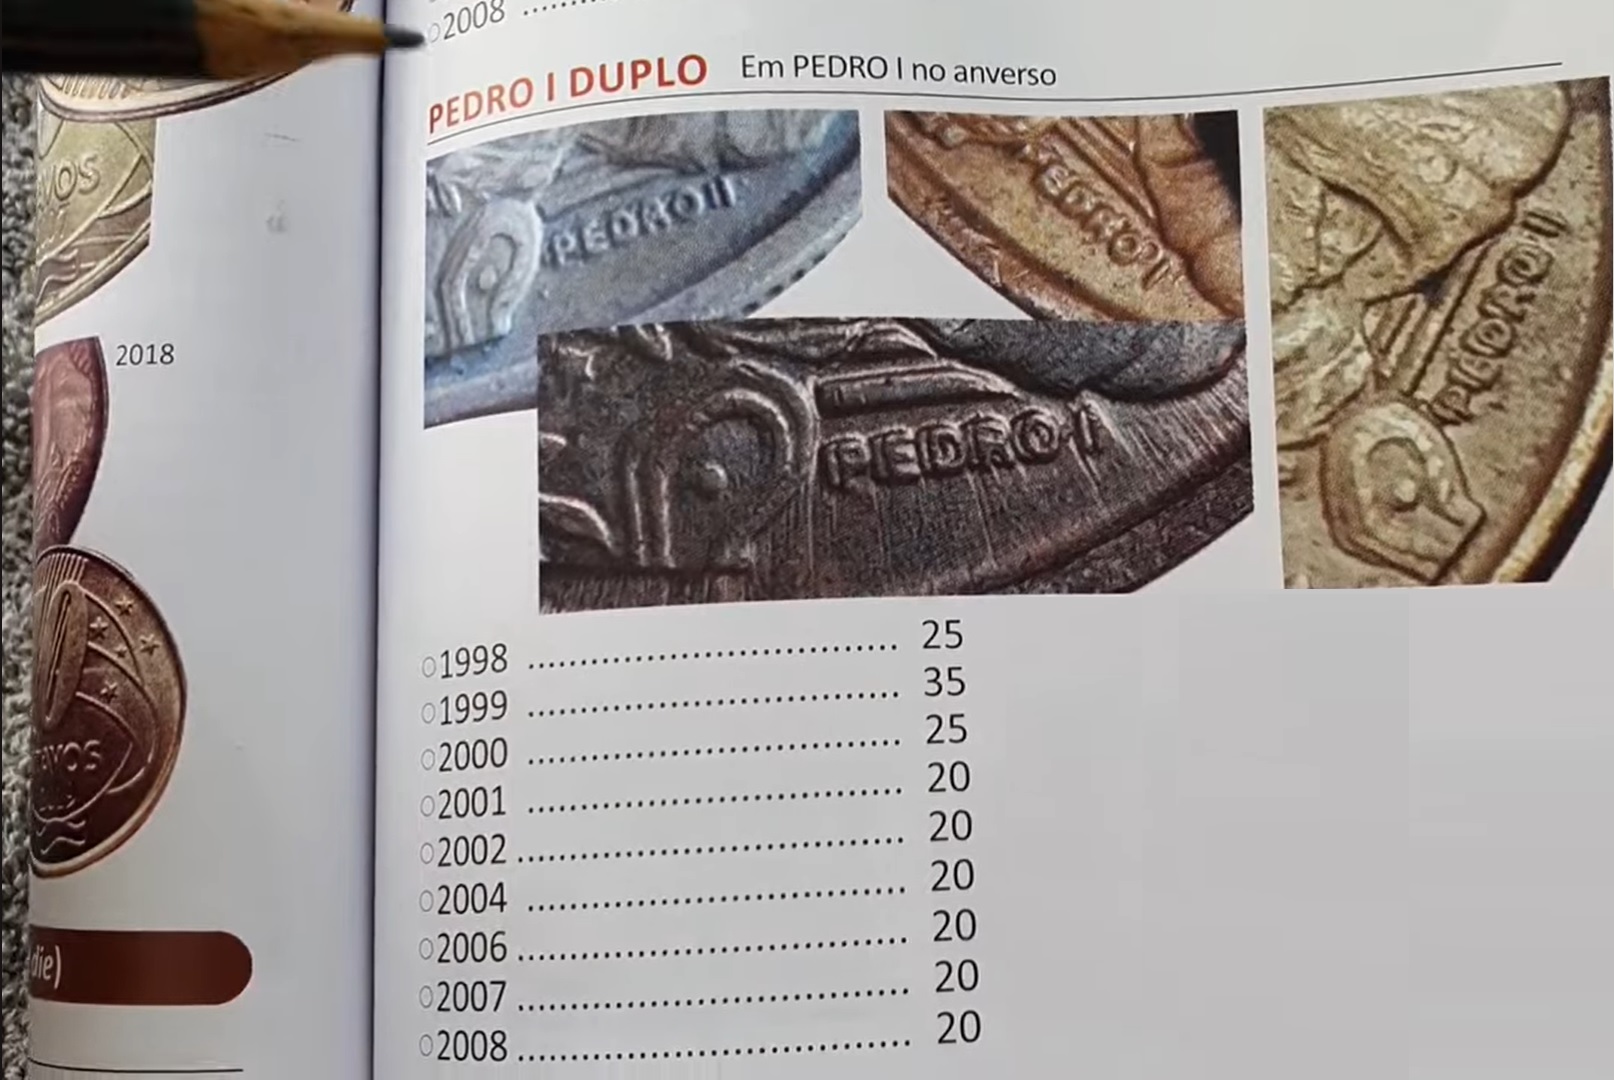 Moedas de 10 centavos com 'Pedro I' duplo